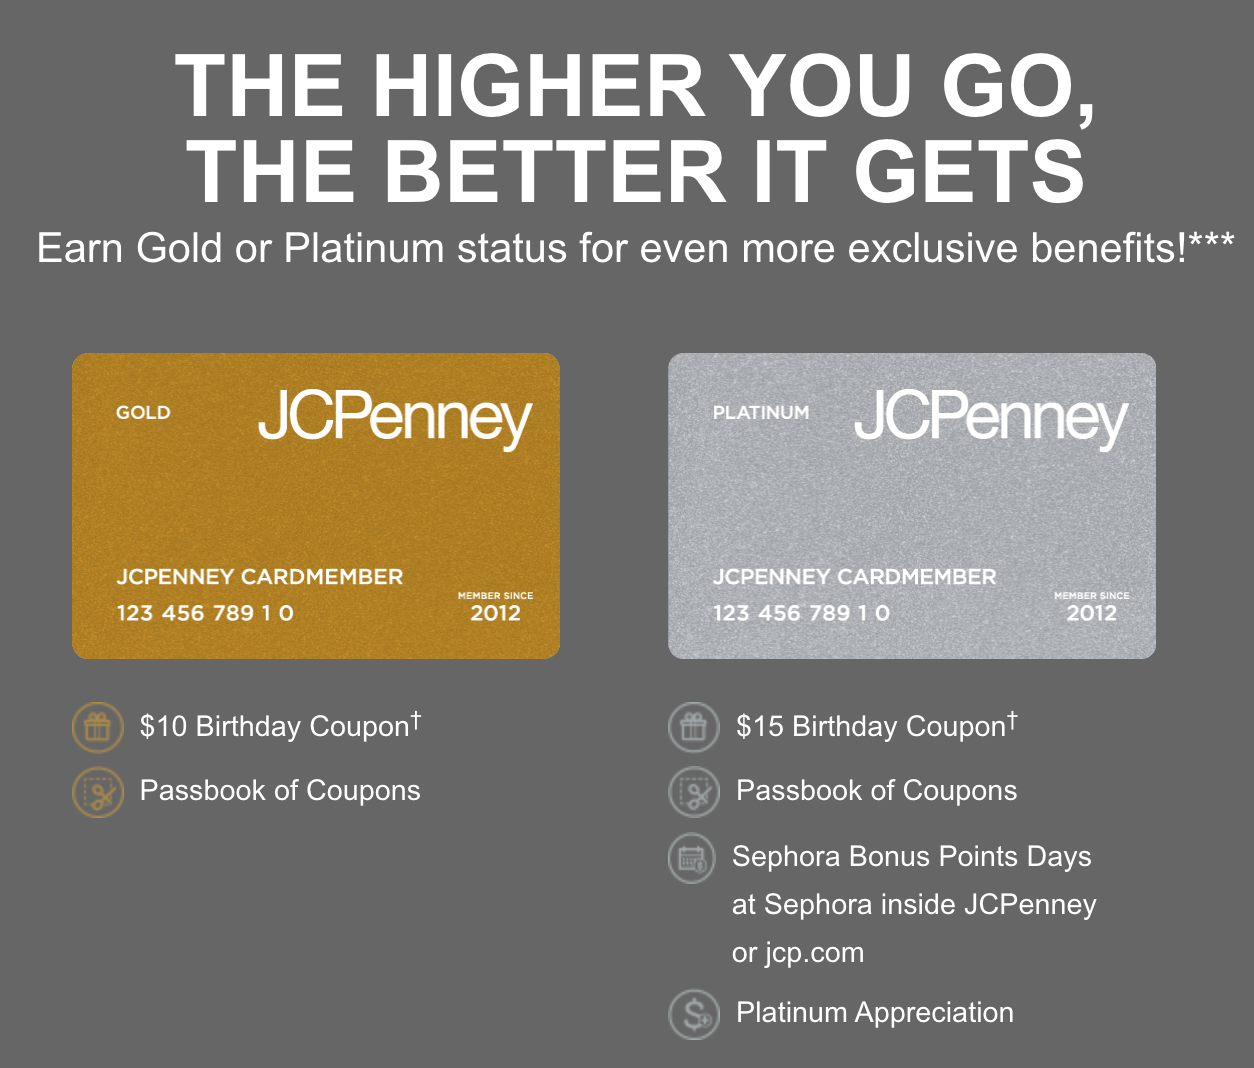 JCPenney Rewards Program Overview & Rewards Calculator